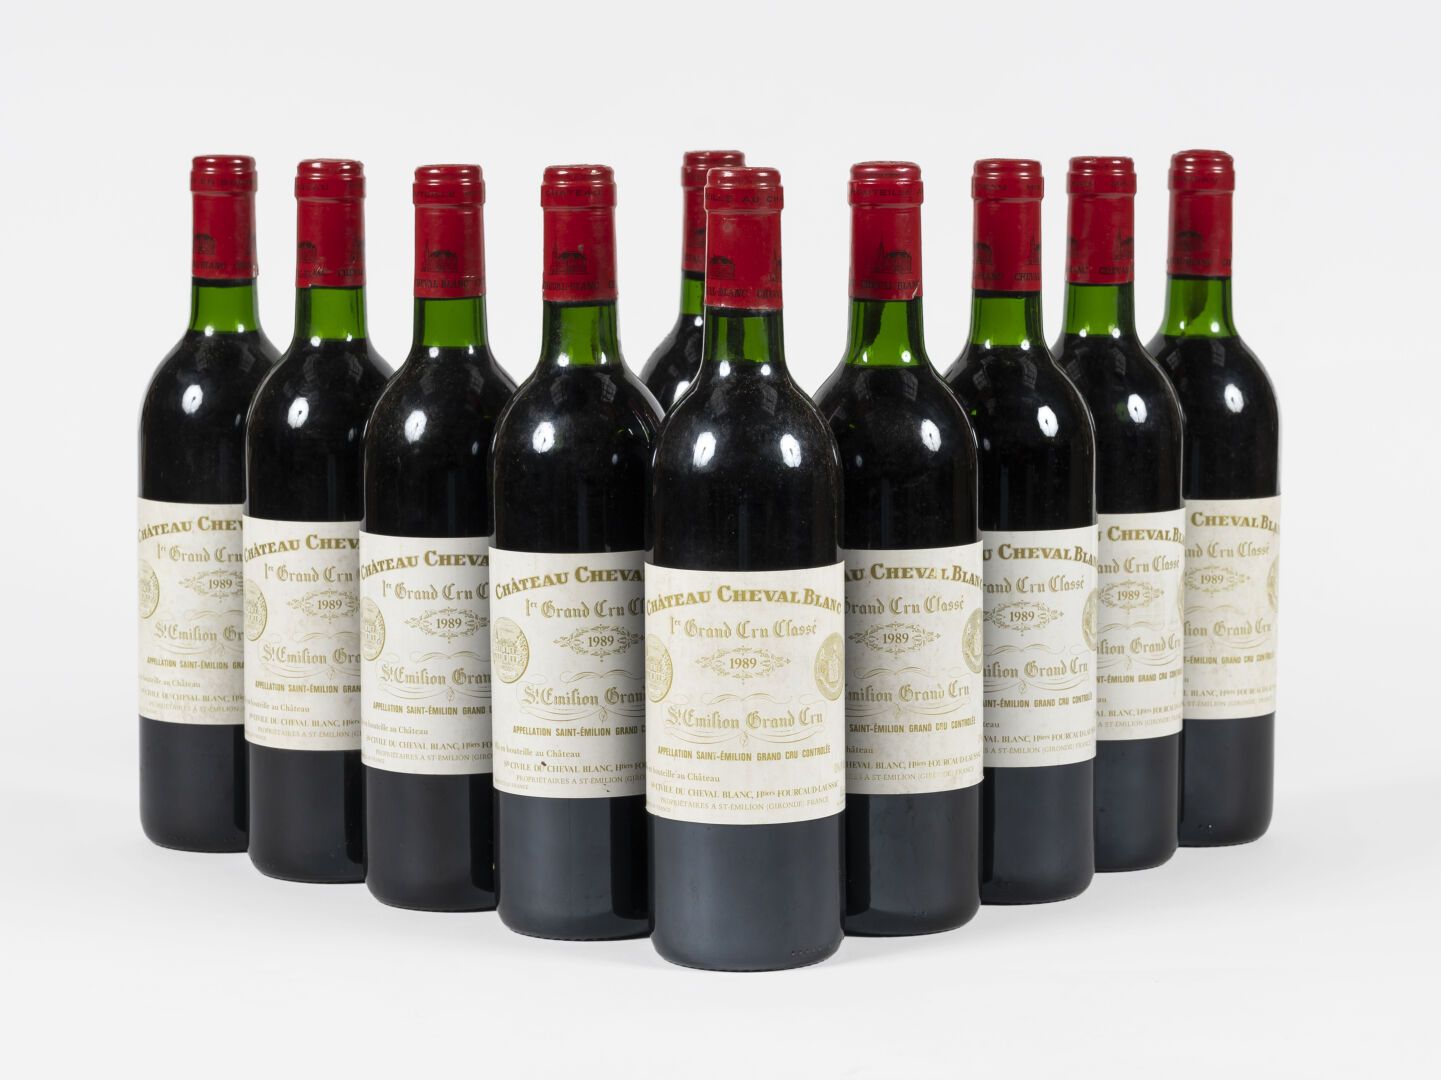 10 bouteilles Château Cheval Blanc 1989 10 botellas Château Cheval Blanc 1989
Sa&hellip;